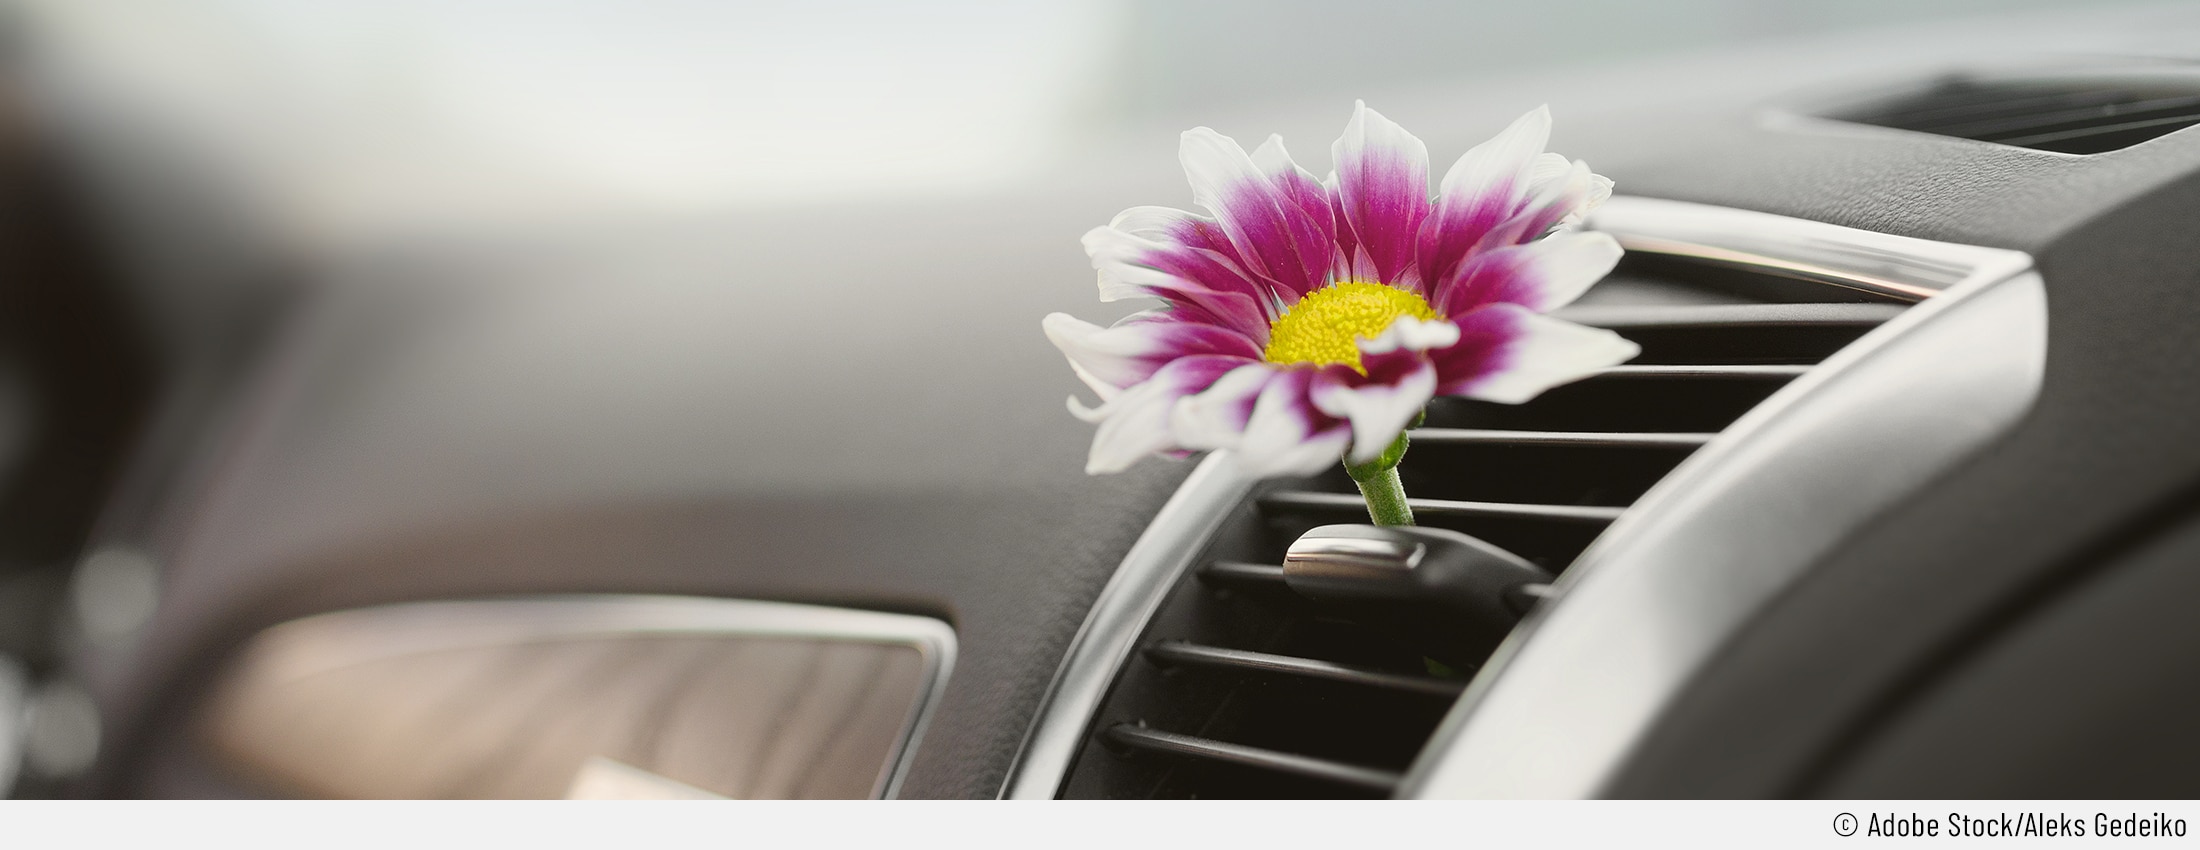 Auto: Klimaanlage desinfizieren & reinigen